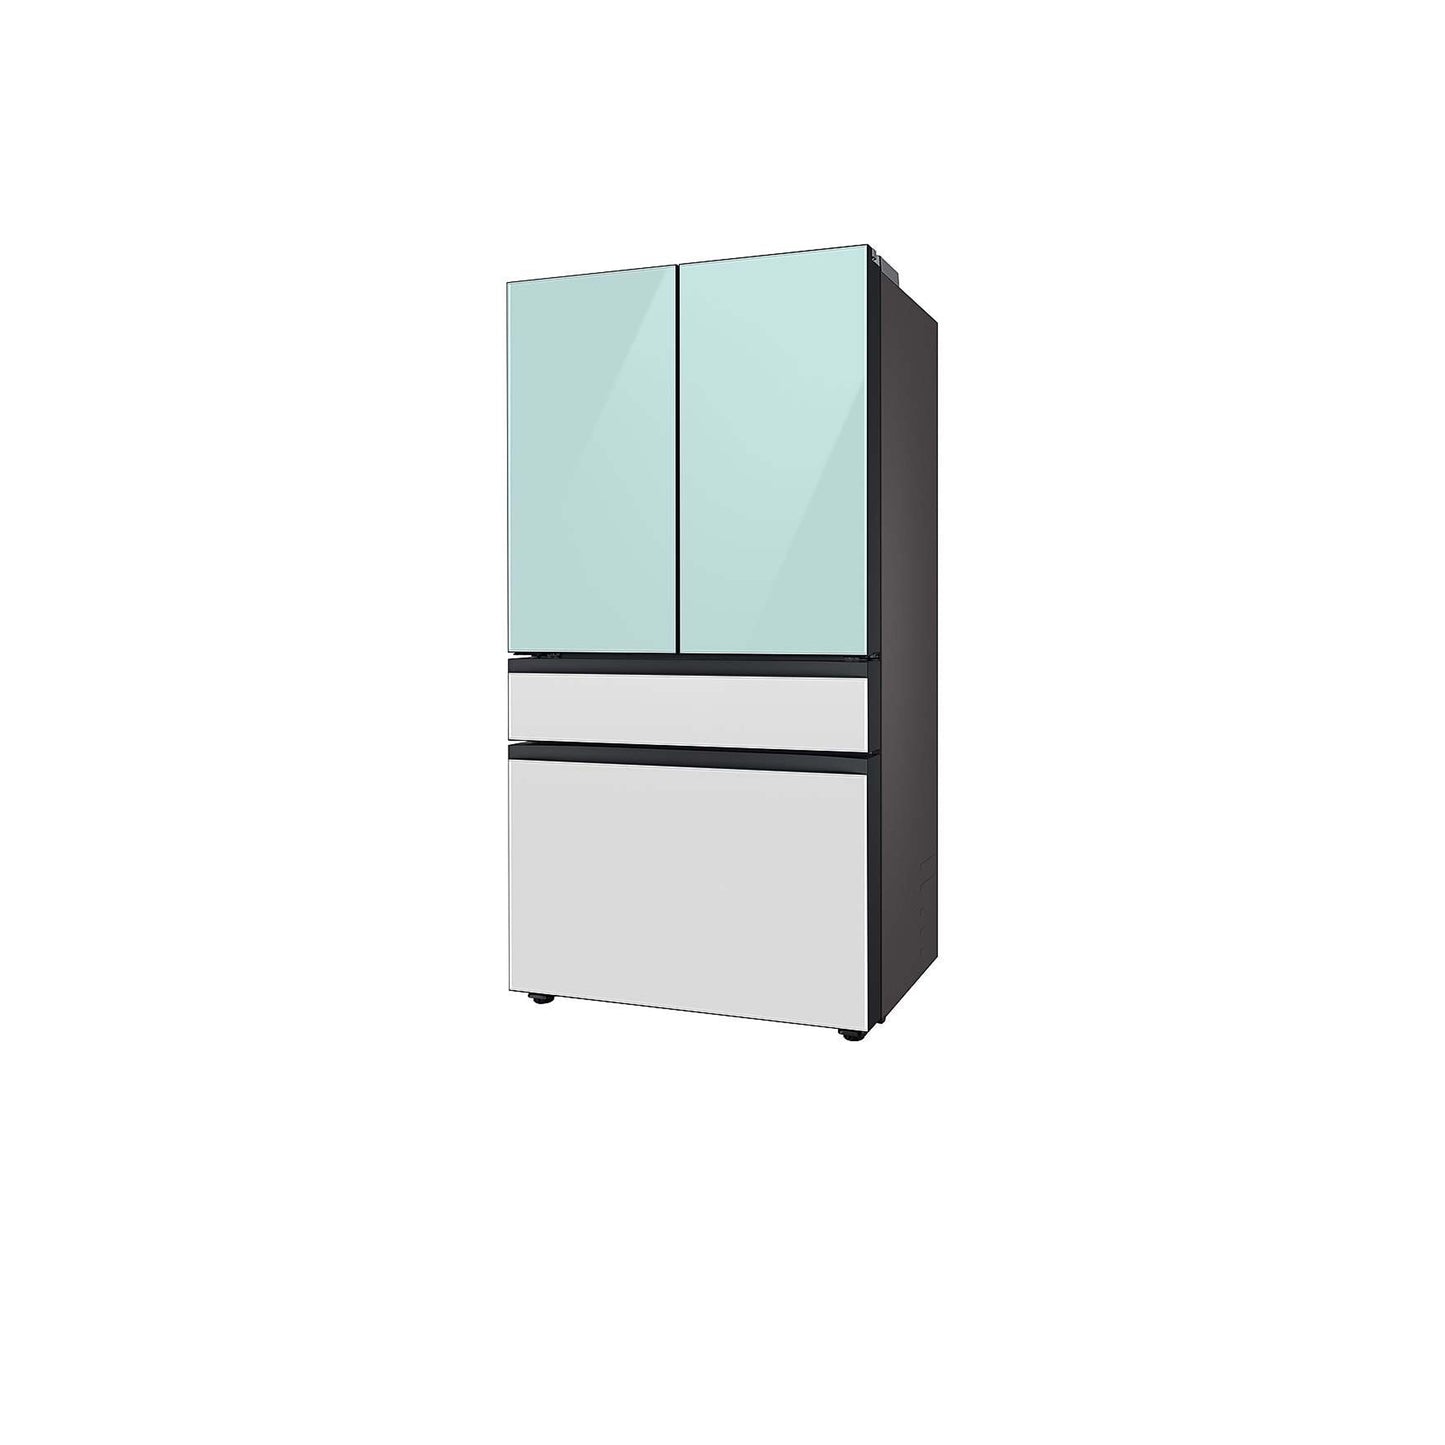 Bespoke 4-Door French Door Refrigerator (23 cu. ft.) with Customizable Door Panel Colors and Beverage Center™ in Rose Pink Glass.